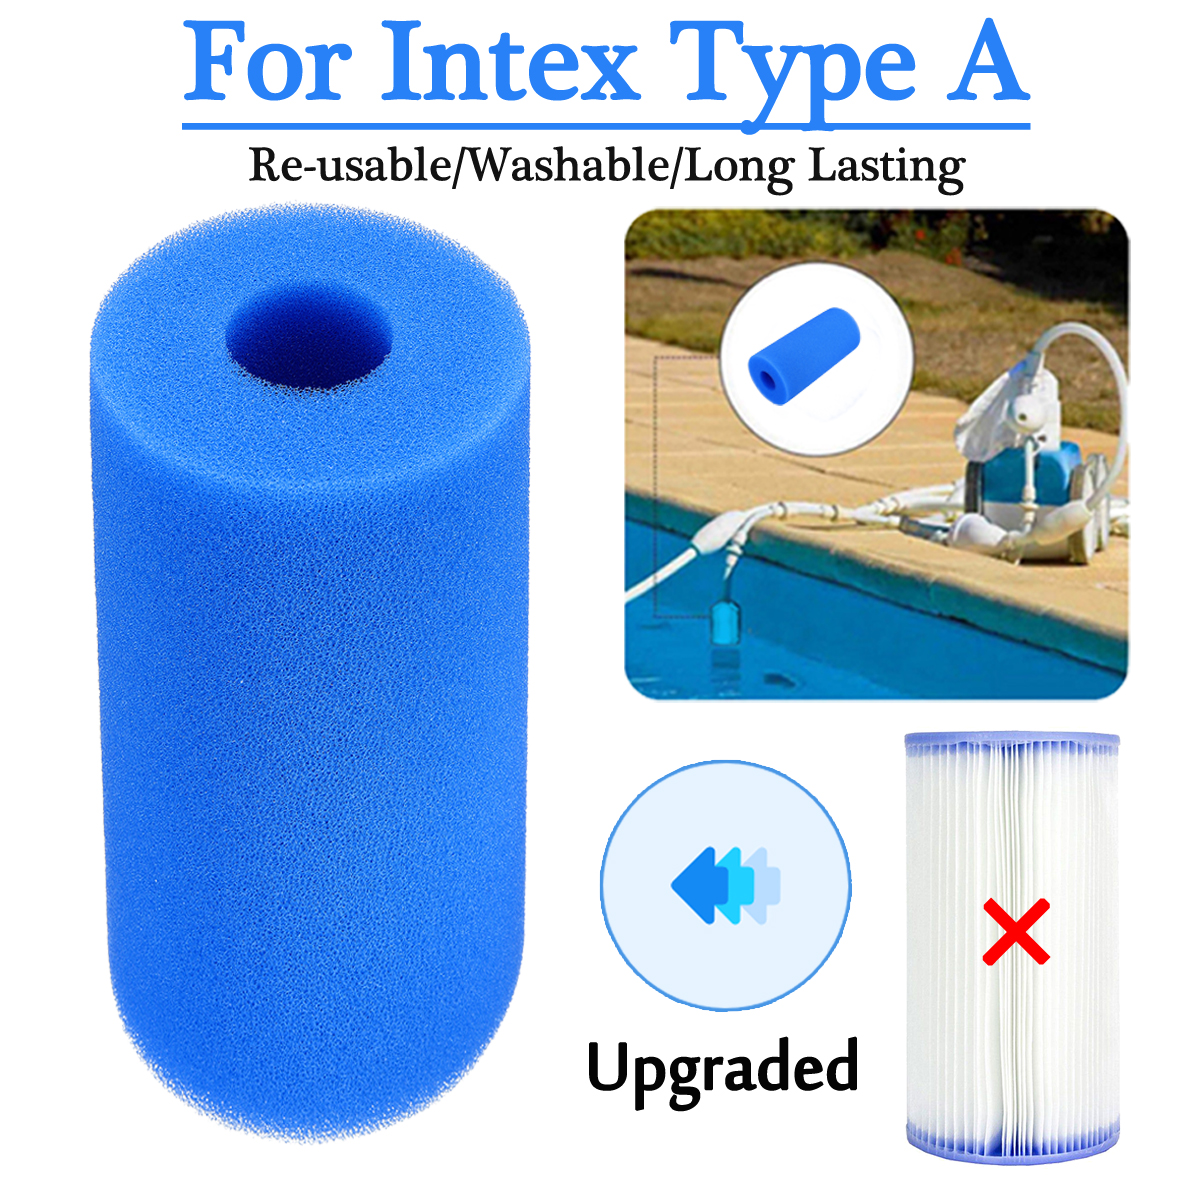 Couche lavable Hot Tub Piscine de mousse de filtre cartouche éponge pour Intex Type S1 UK 